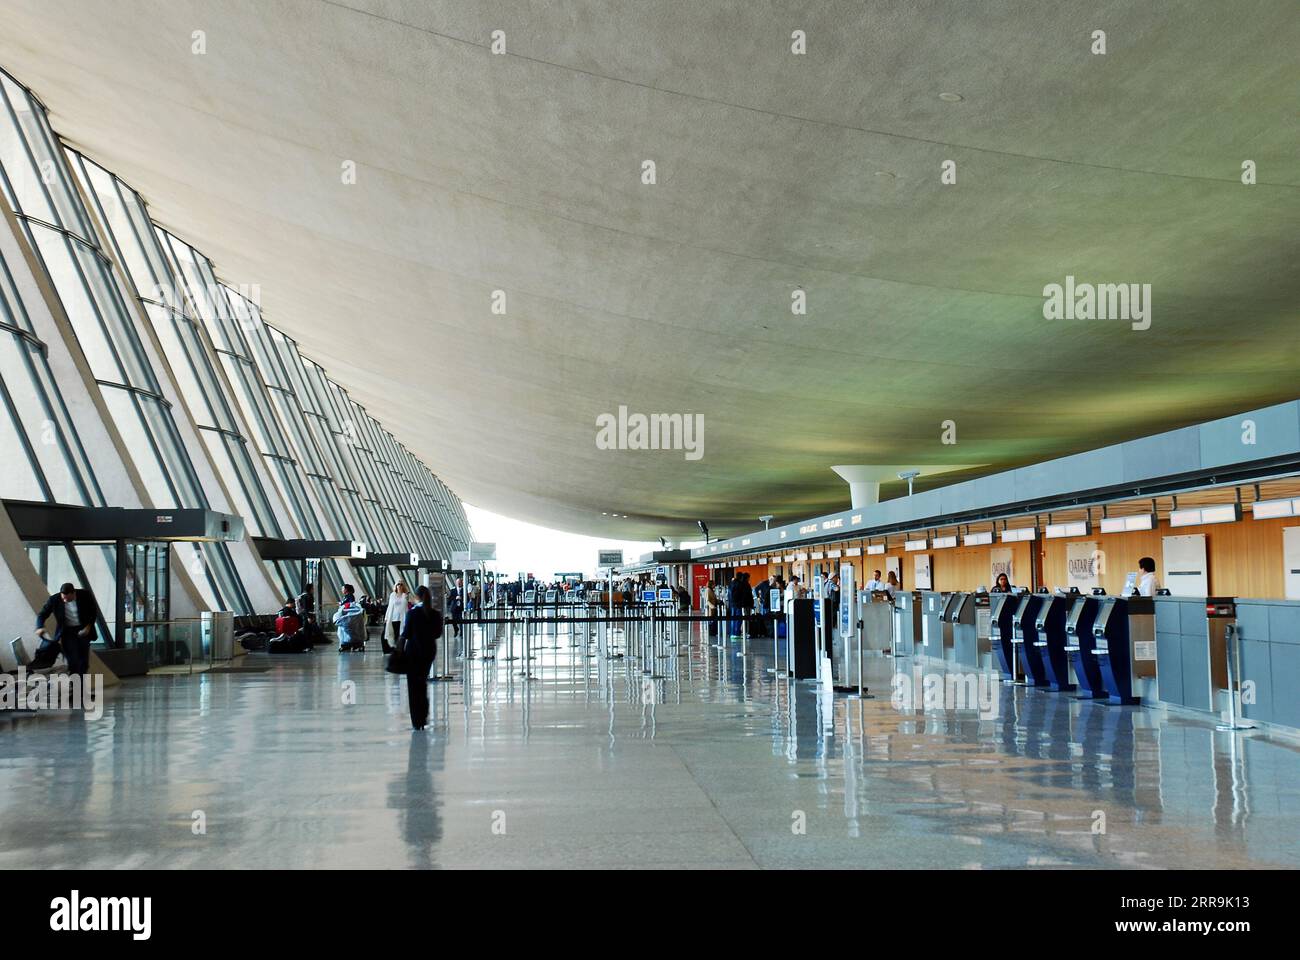 Passeggeri e viaggiatori attraversano a piedi il Terminal principale dell'Aeroporto Internazionale Dulles, progettato da Eero Saarinen, vicino a Washington DC Foto Stock